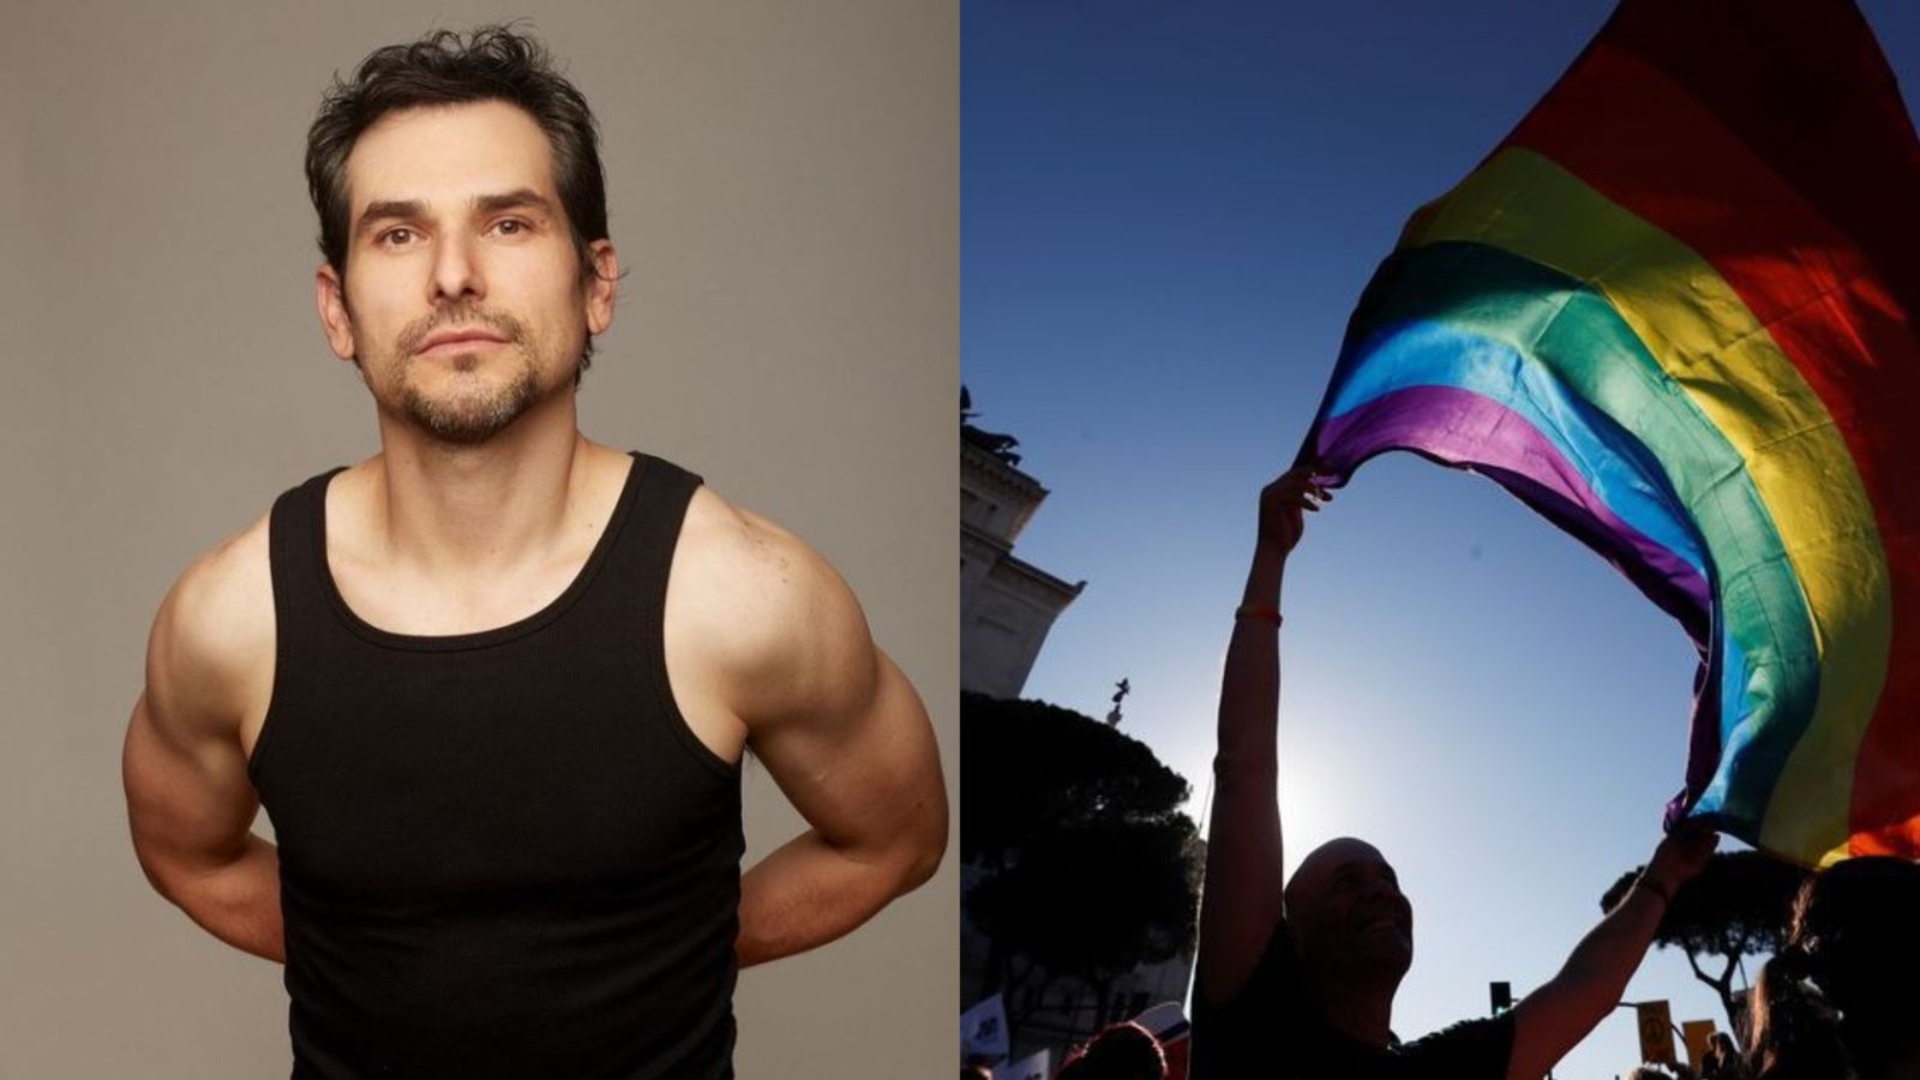 Alan Estrada y su poderoso mensaje sobre el Orgullo LGBT+: “La ignorancia y prejuicio pavimenta violencia” 